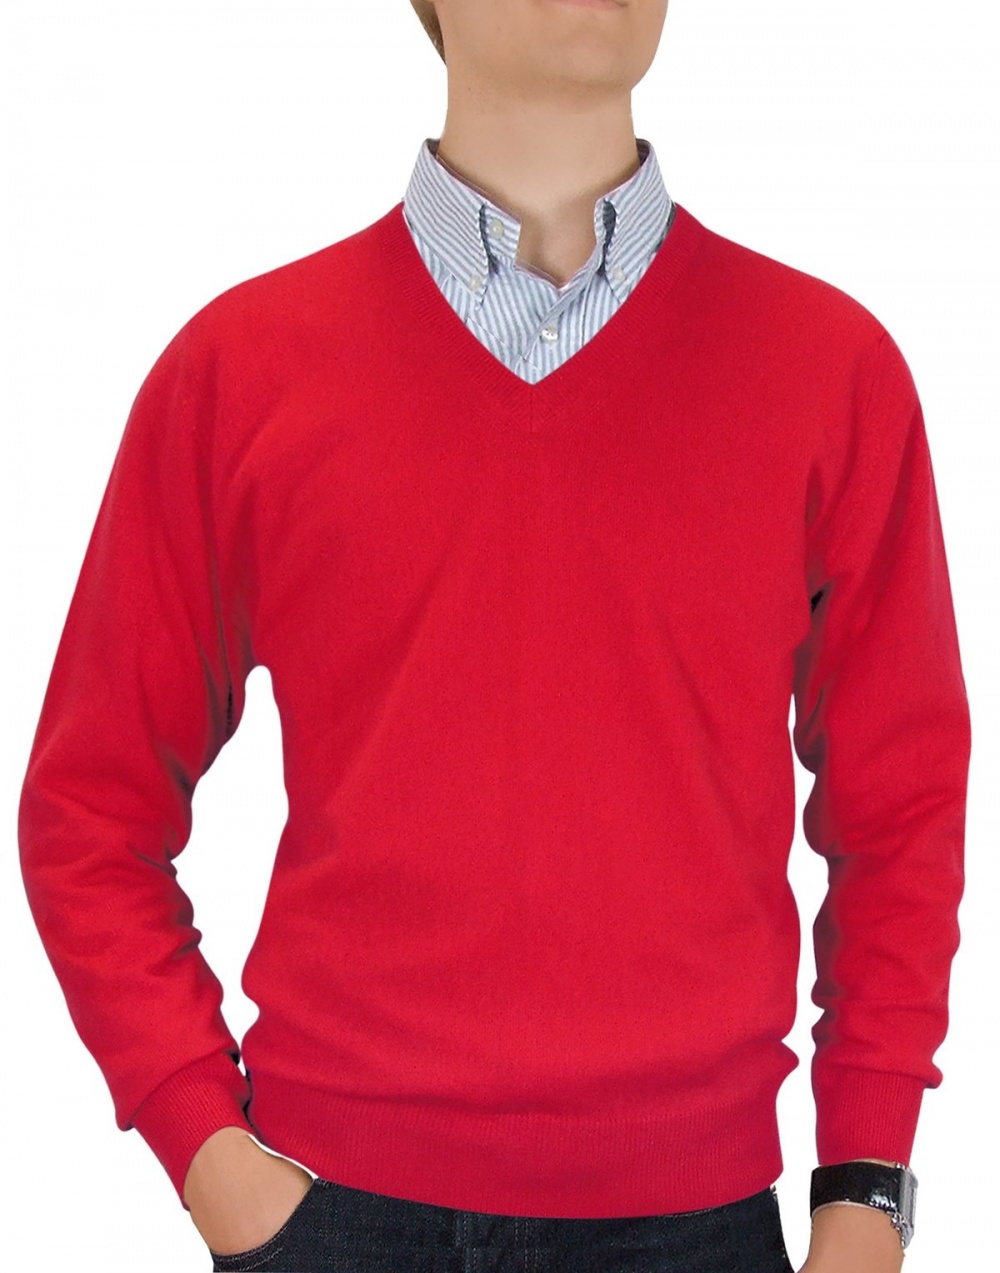 Красный свитер мужской